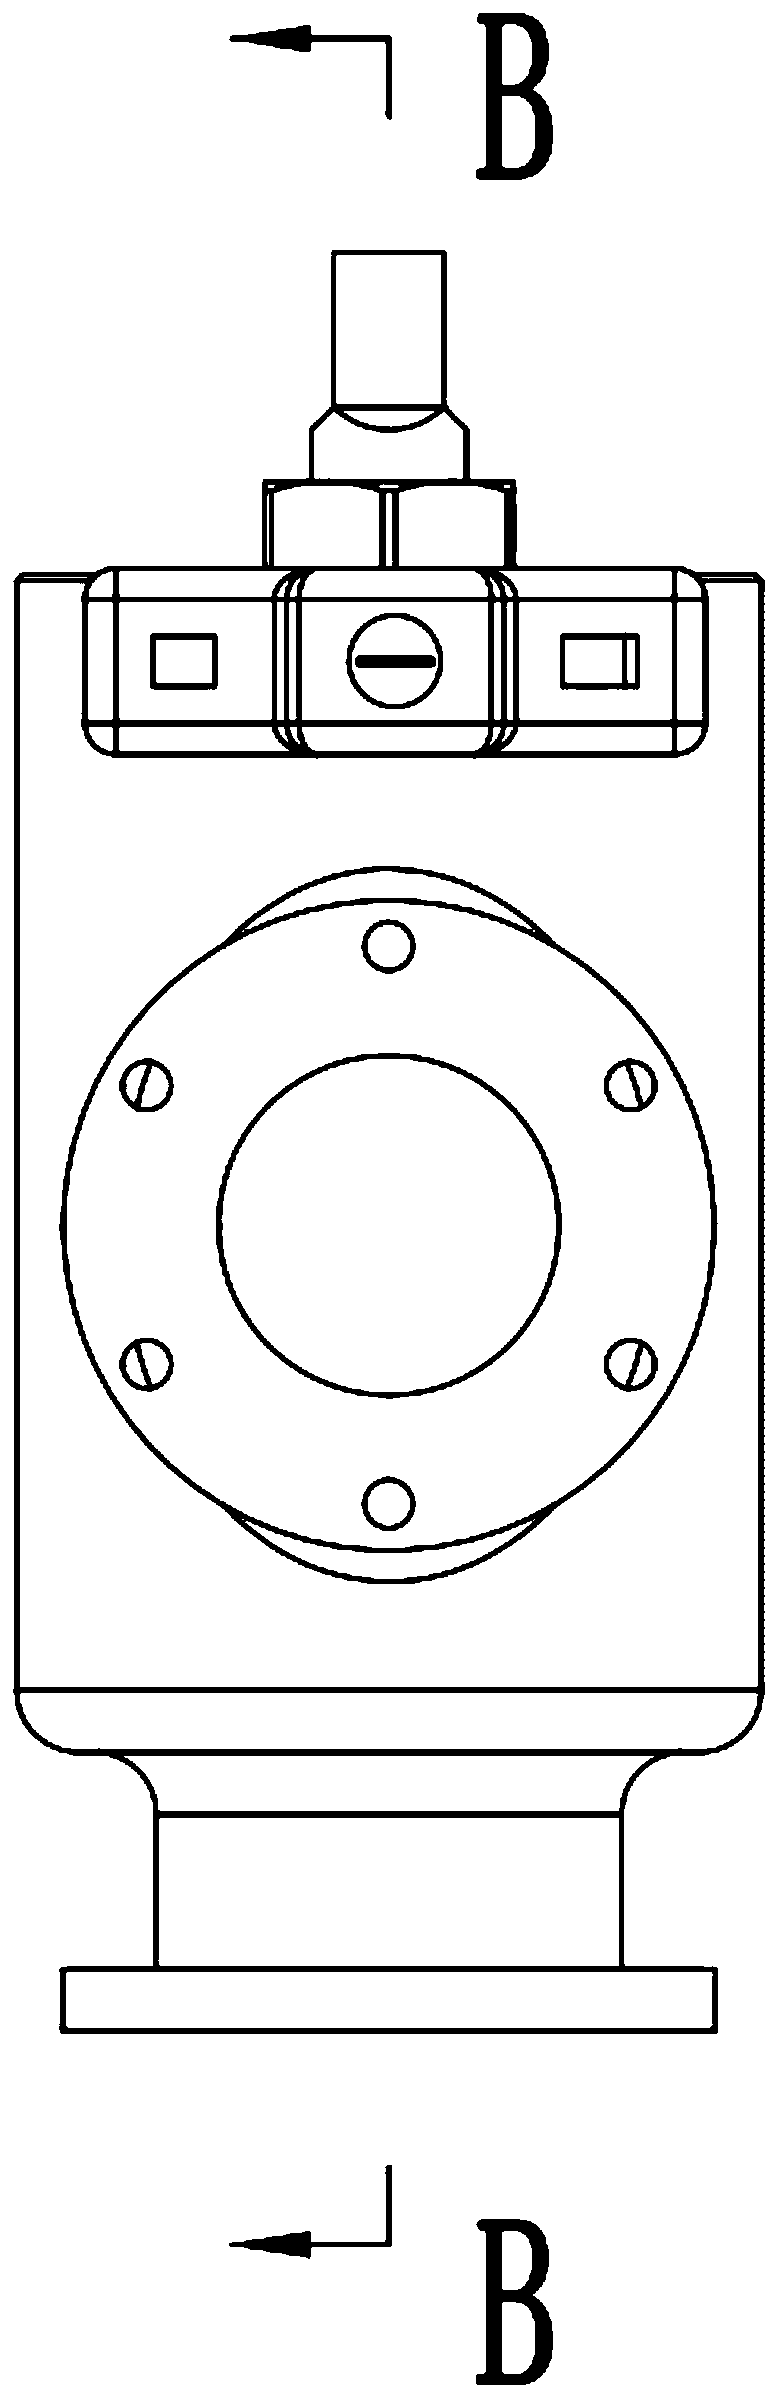 a ball valve